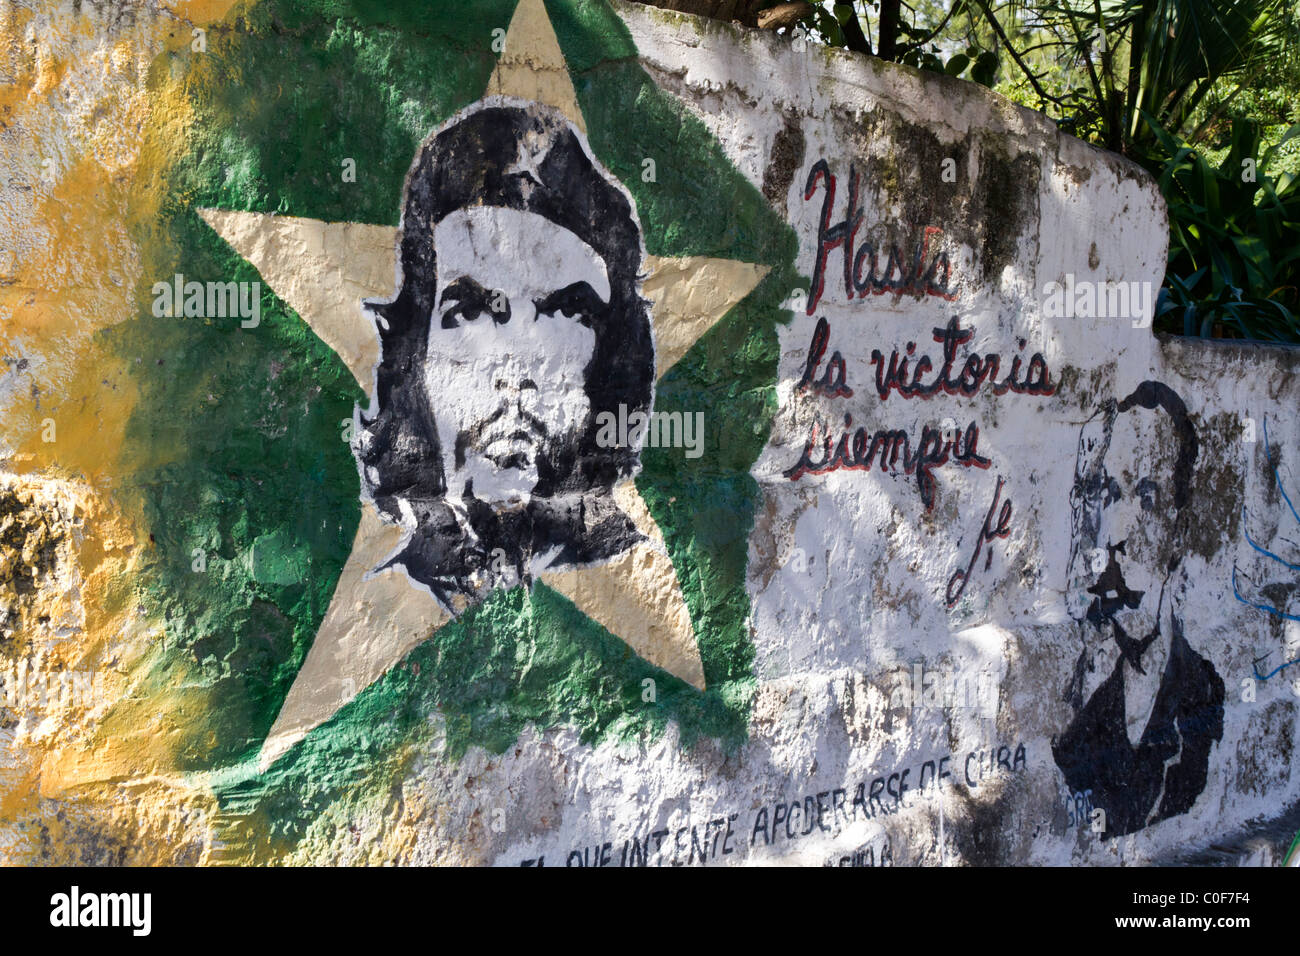 Peinture murale de Che Guevara, Varadero Cuba Banque D'Images